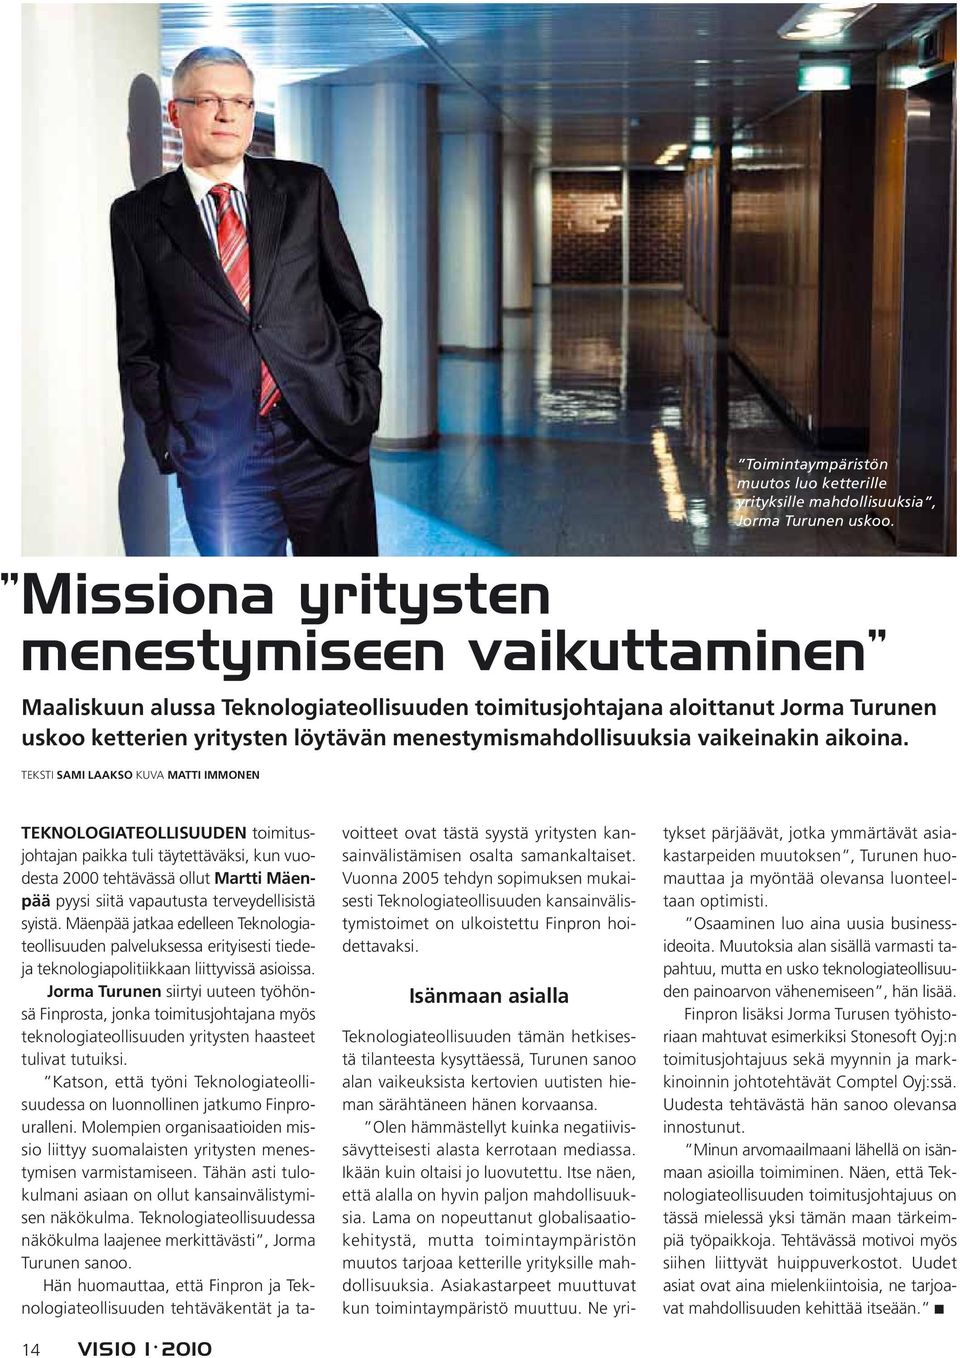 14 VISIO 1 2010 TEKNOLOGIATEOLLISUUDEN toimitusjohtajan paikka tuli täytettäväksi, kun vuodesta 2000 tehtävässä ollut Martti Mäenpää pyysi siitä vapautusta terveydellisistä syistä.